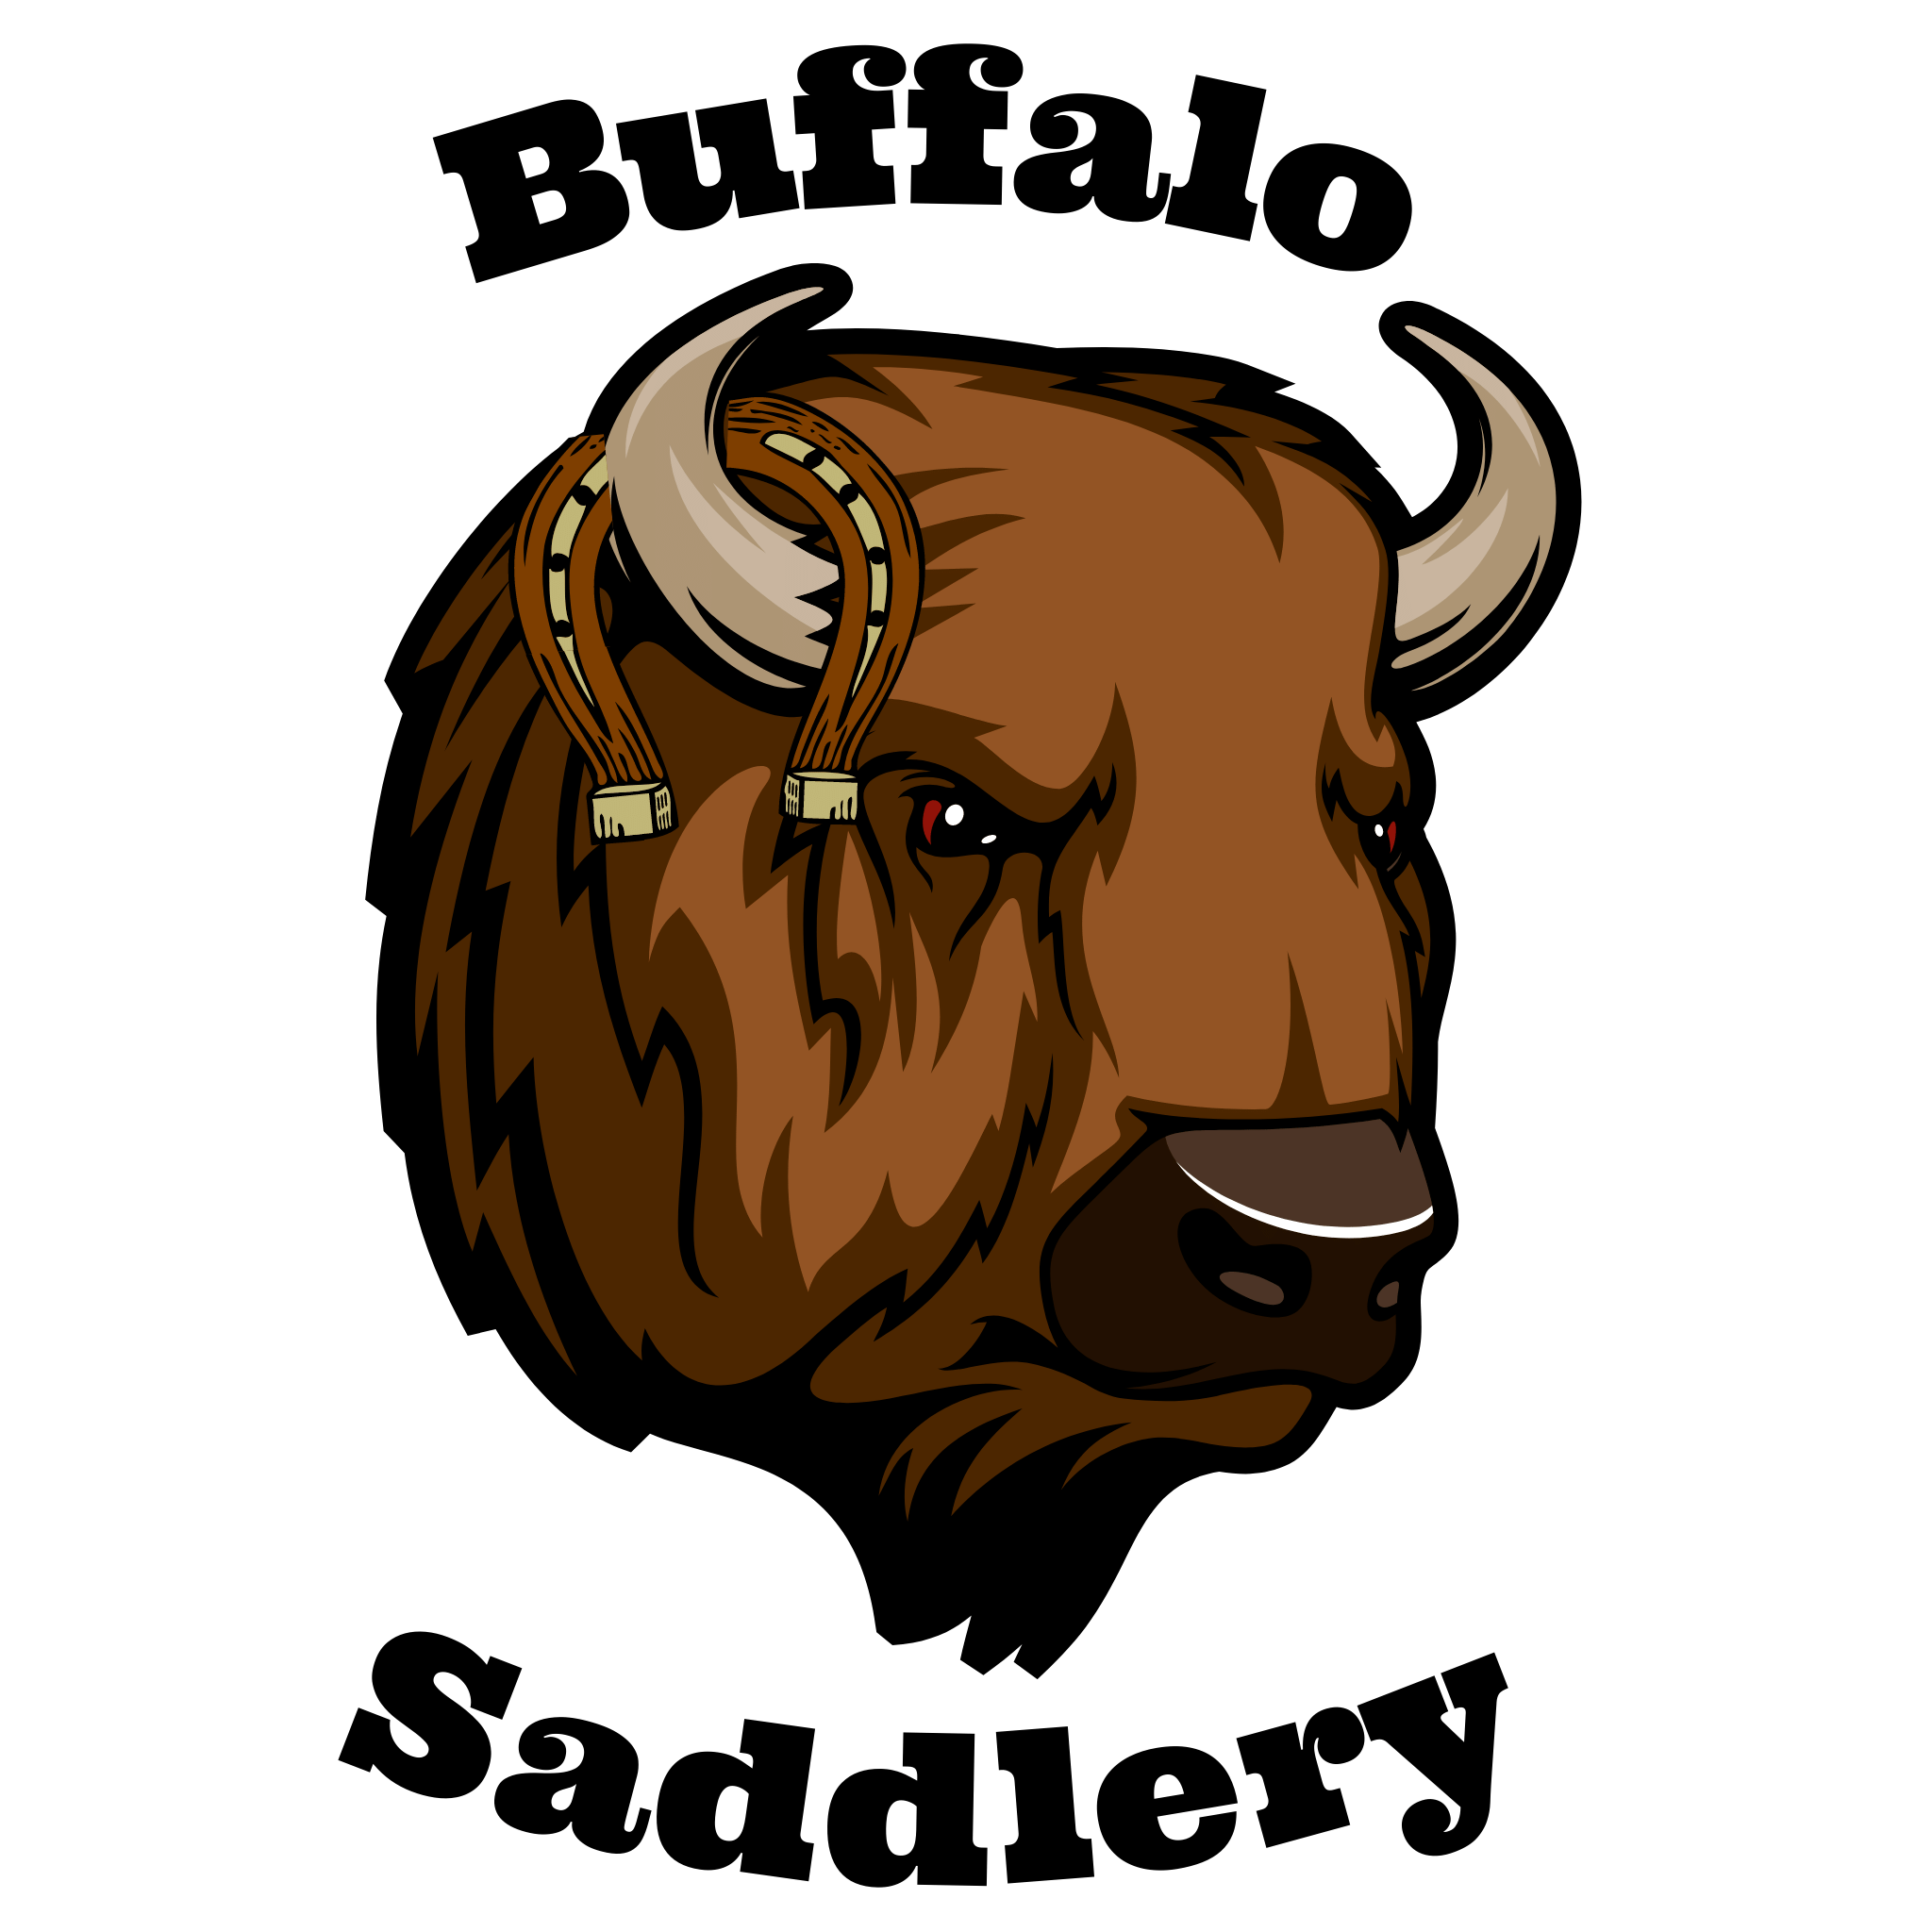 Buffalo Saddlery